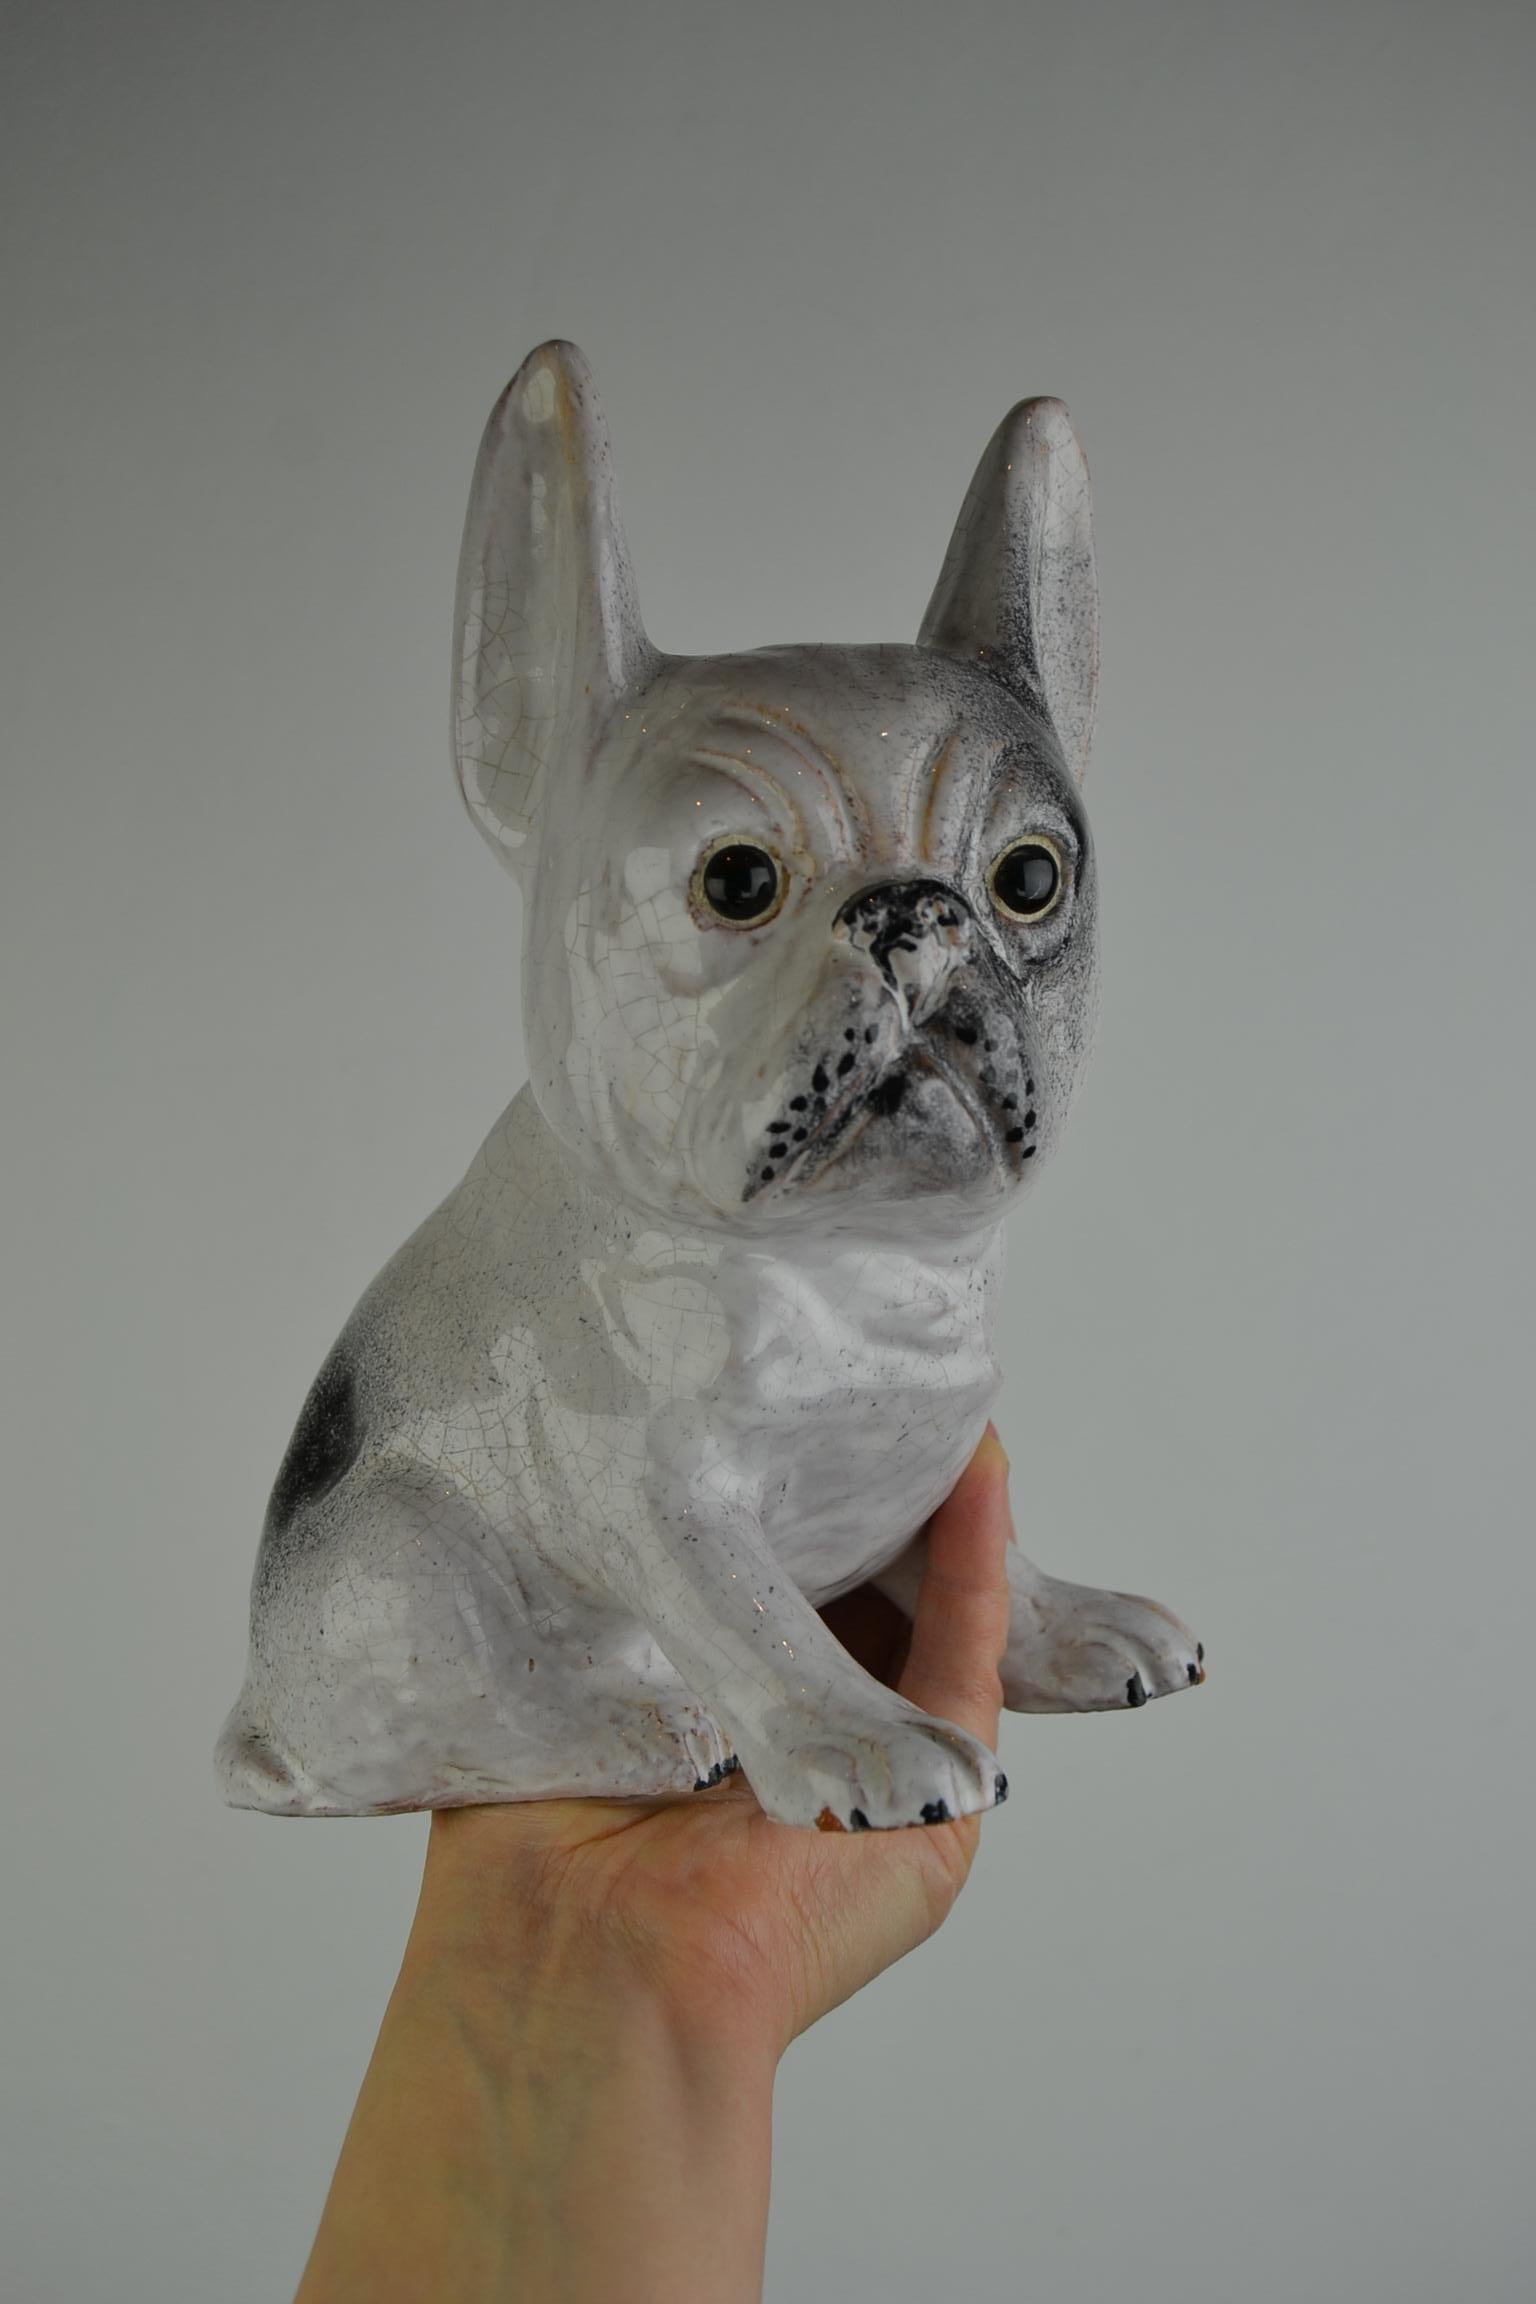 Vintage Keramik Skulptur einer französischen Bulldogge. 
Eine große Frenchie-Figur aus Keramik in den Farben weiß - grau mit inzwischen schönem Craquelé. 
Es ist eine große Bulldoggen-Skulptur für seine Größe. 
Nicht mehr perfekt, auf 2 Pfoten ein